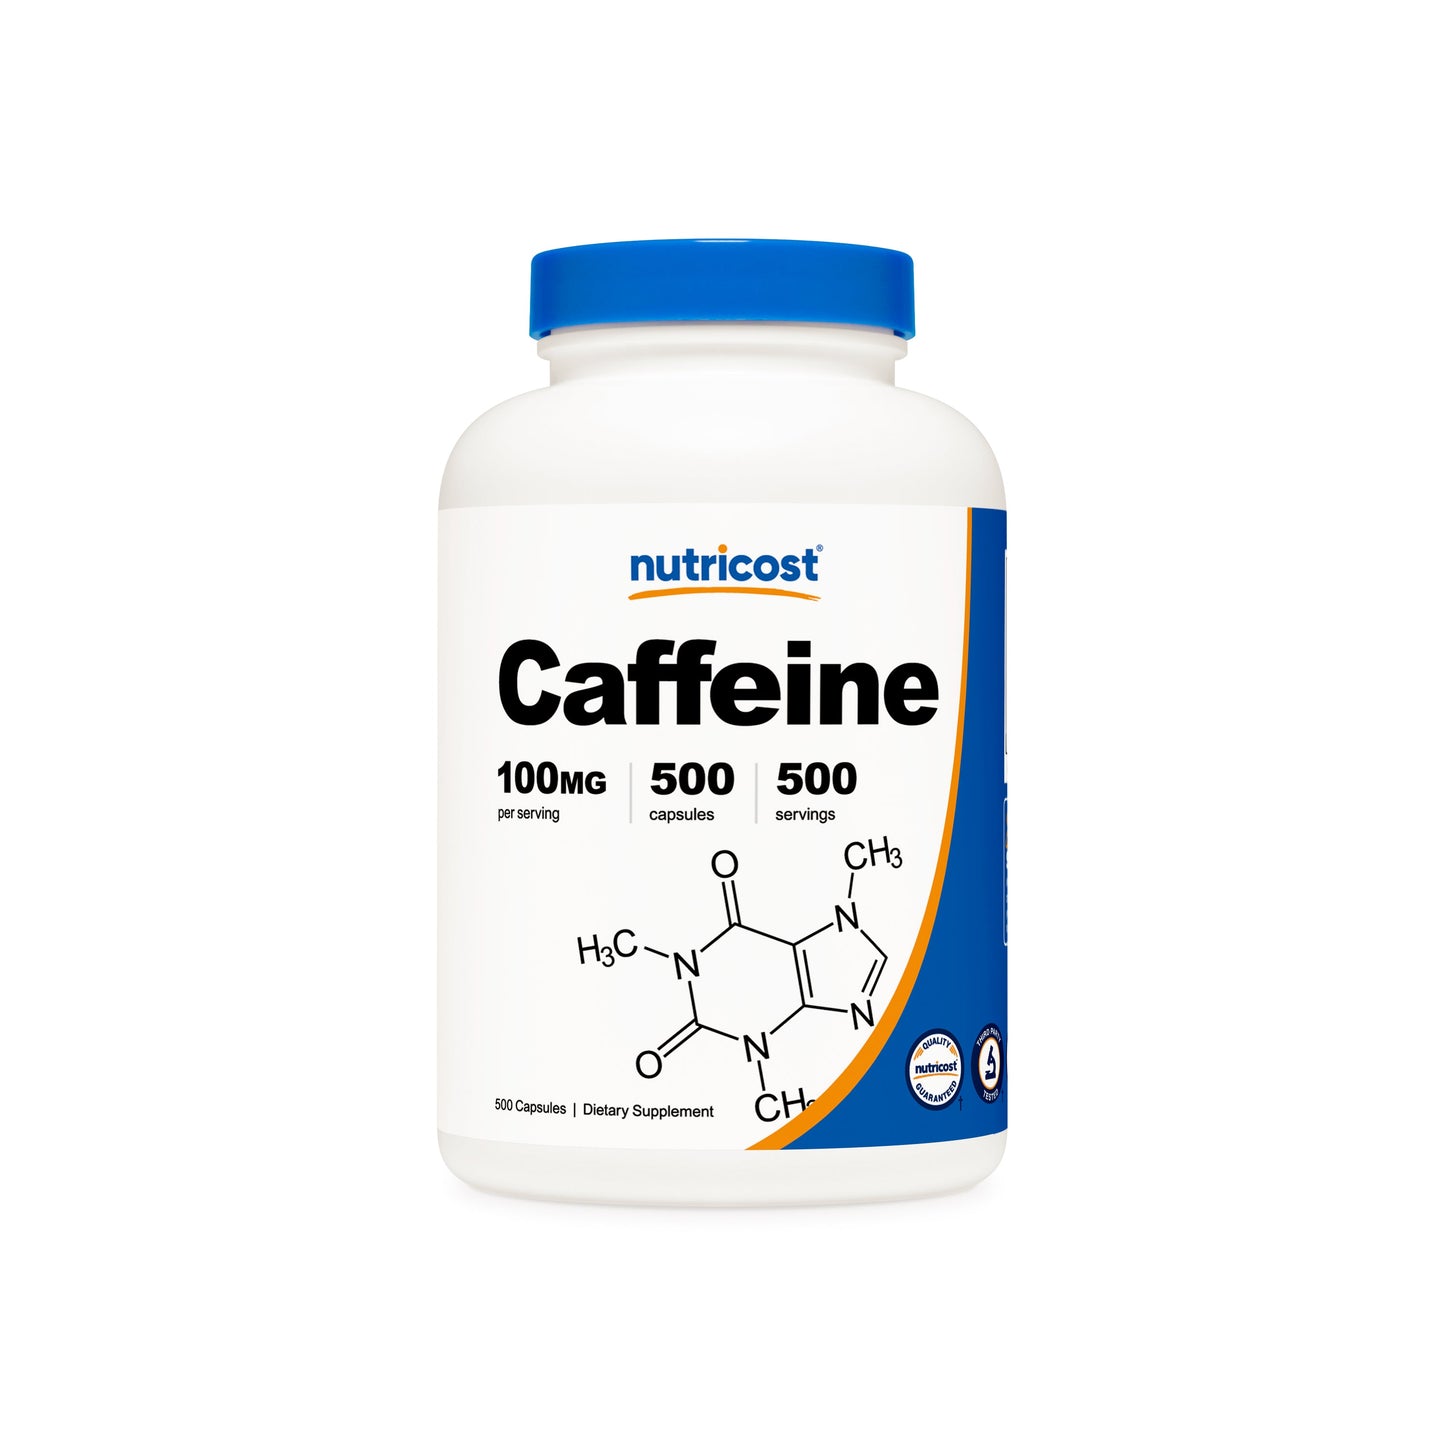 Nutricost Caffeine Capsules